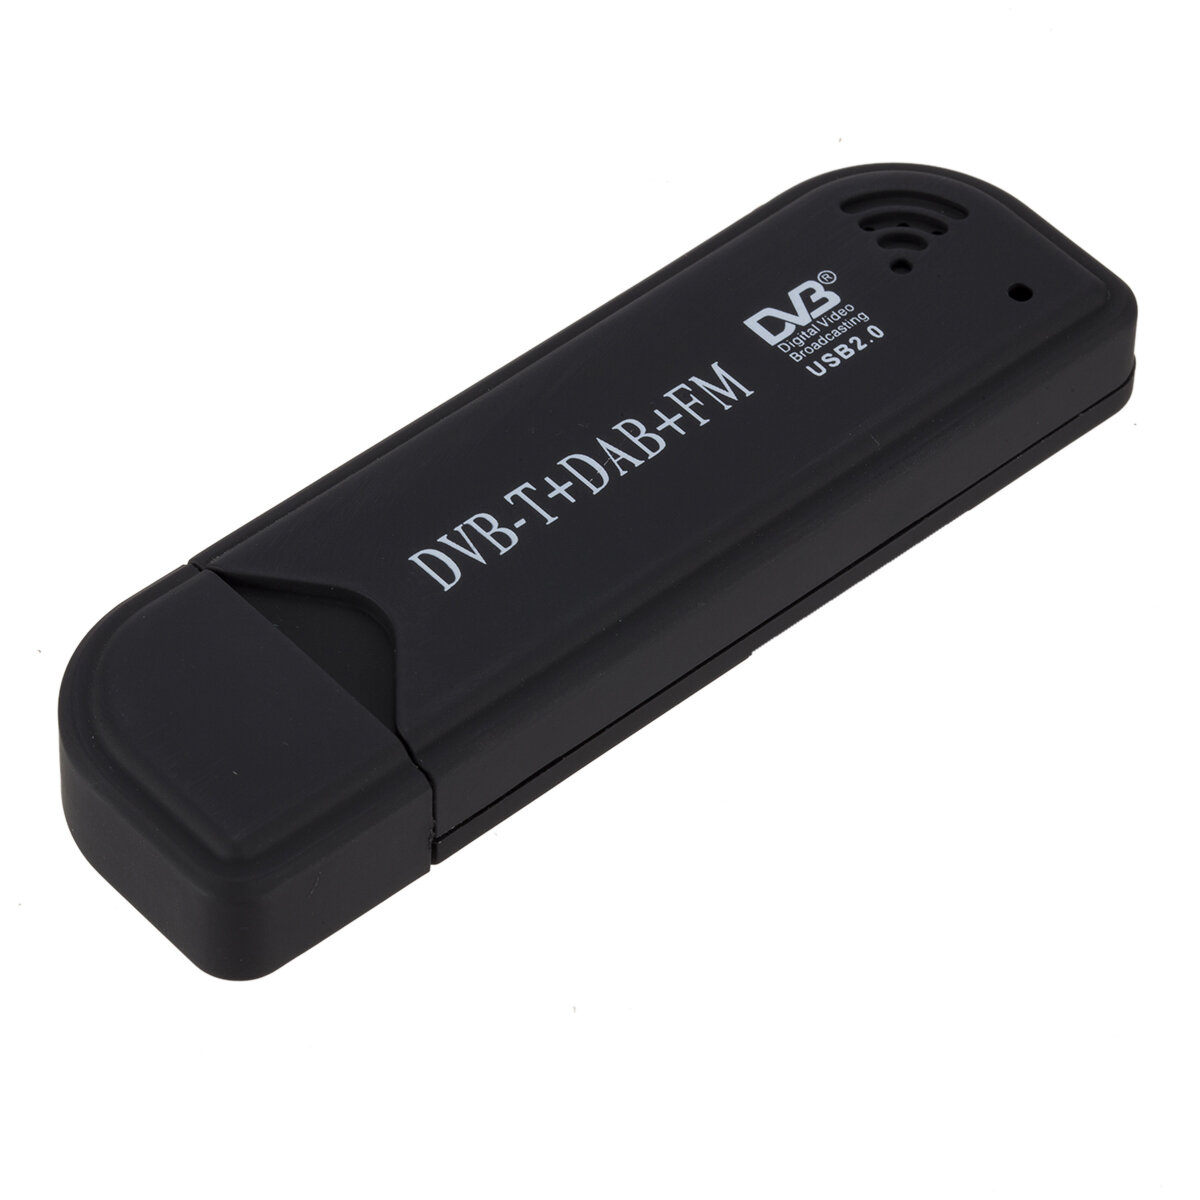 USB 2.0 Digitale DVB-T SDR DAB FM TV Tuner Ontvanger Stick